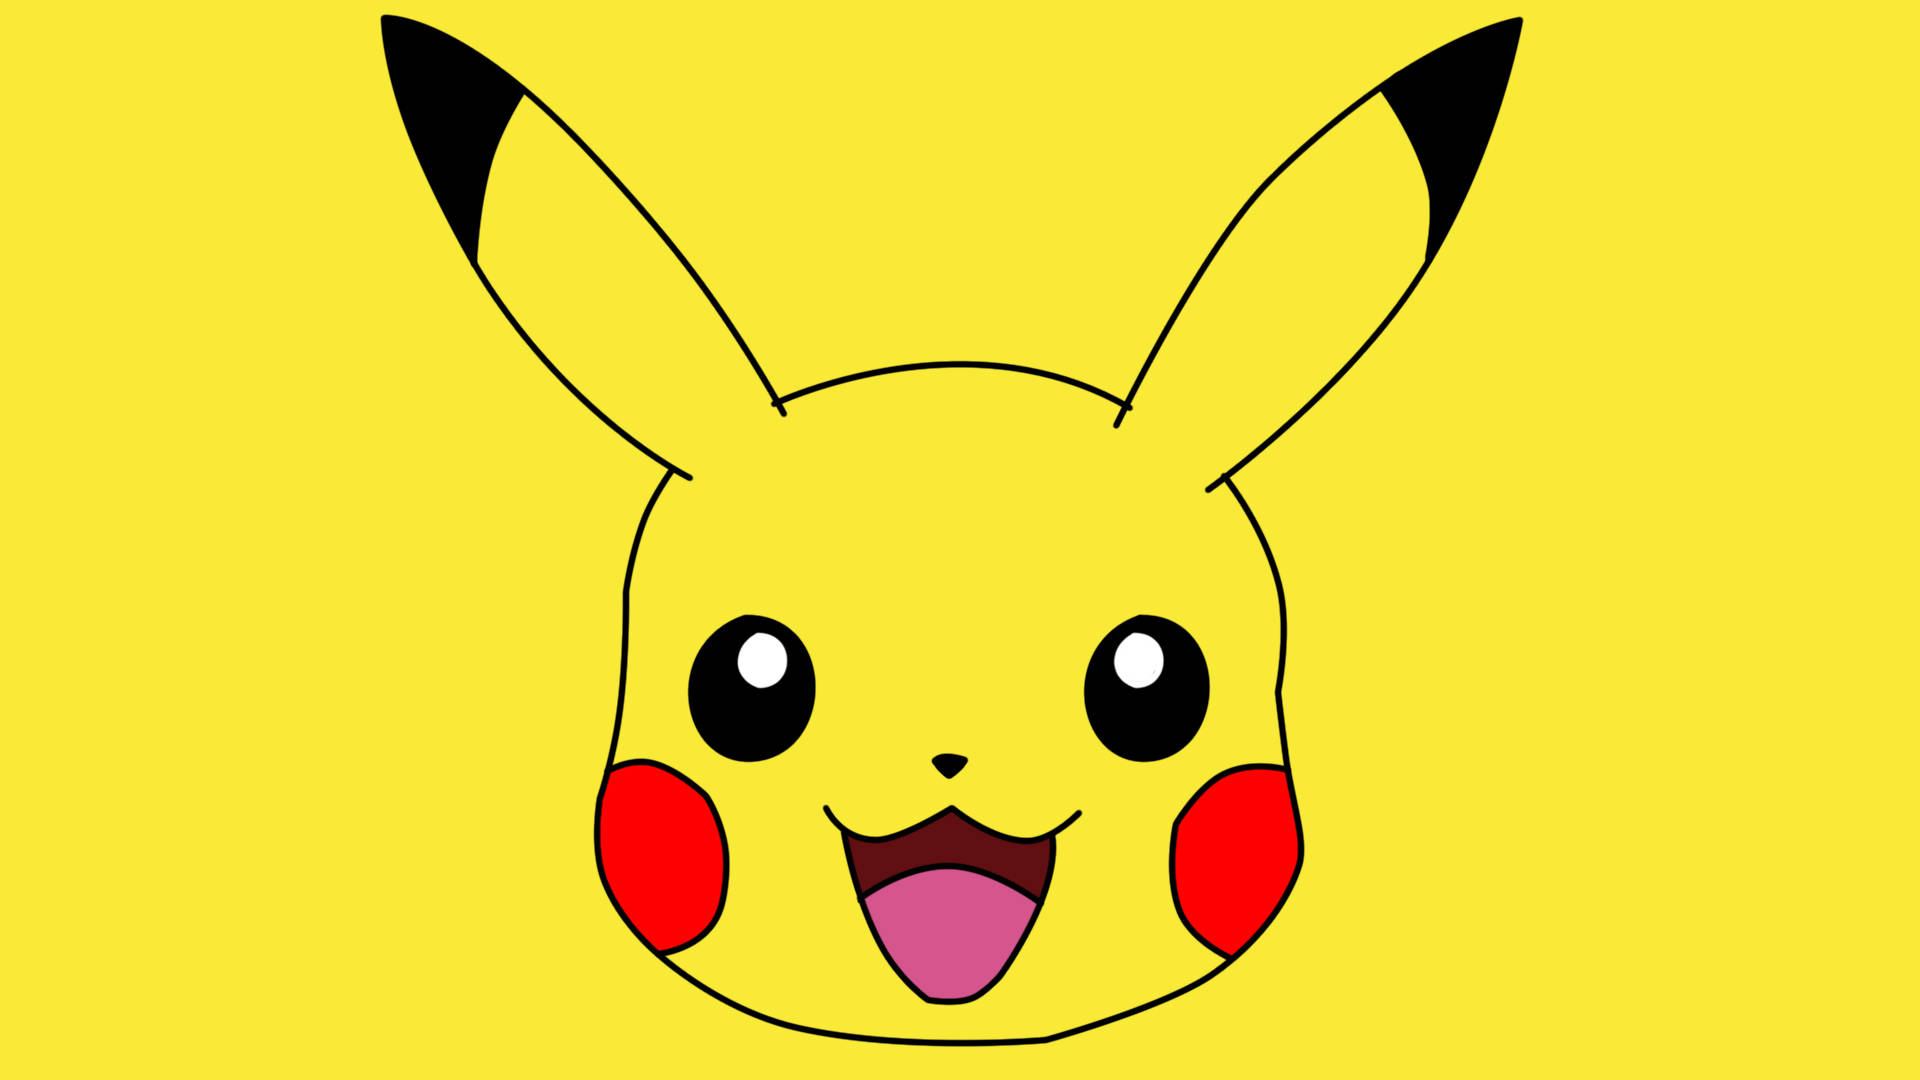 Cute Pikachu Wallpaper - downloads: Hãy trang hoàng cho màn hình của điện thoại hoặc máy tính của bạn với những hình nền về Pikachu xinh xắn. Với hình ảnh \